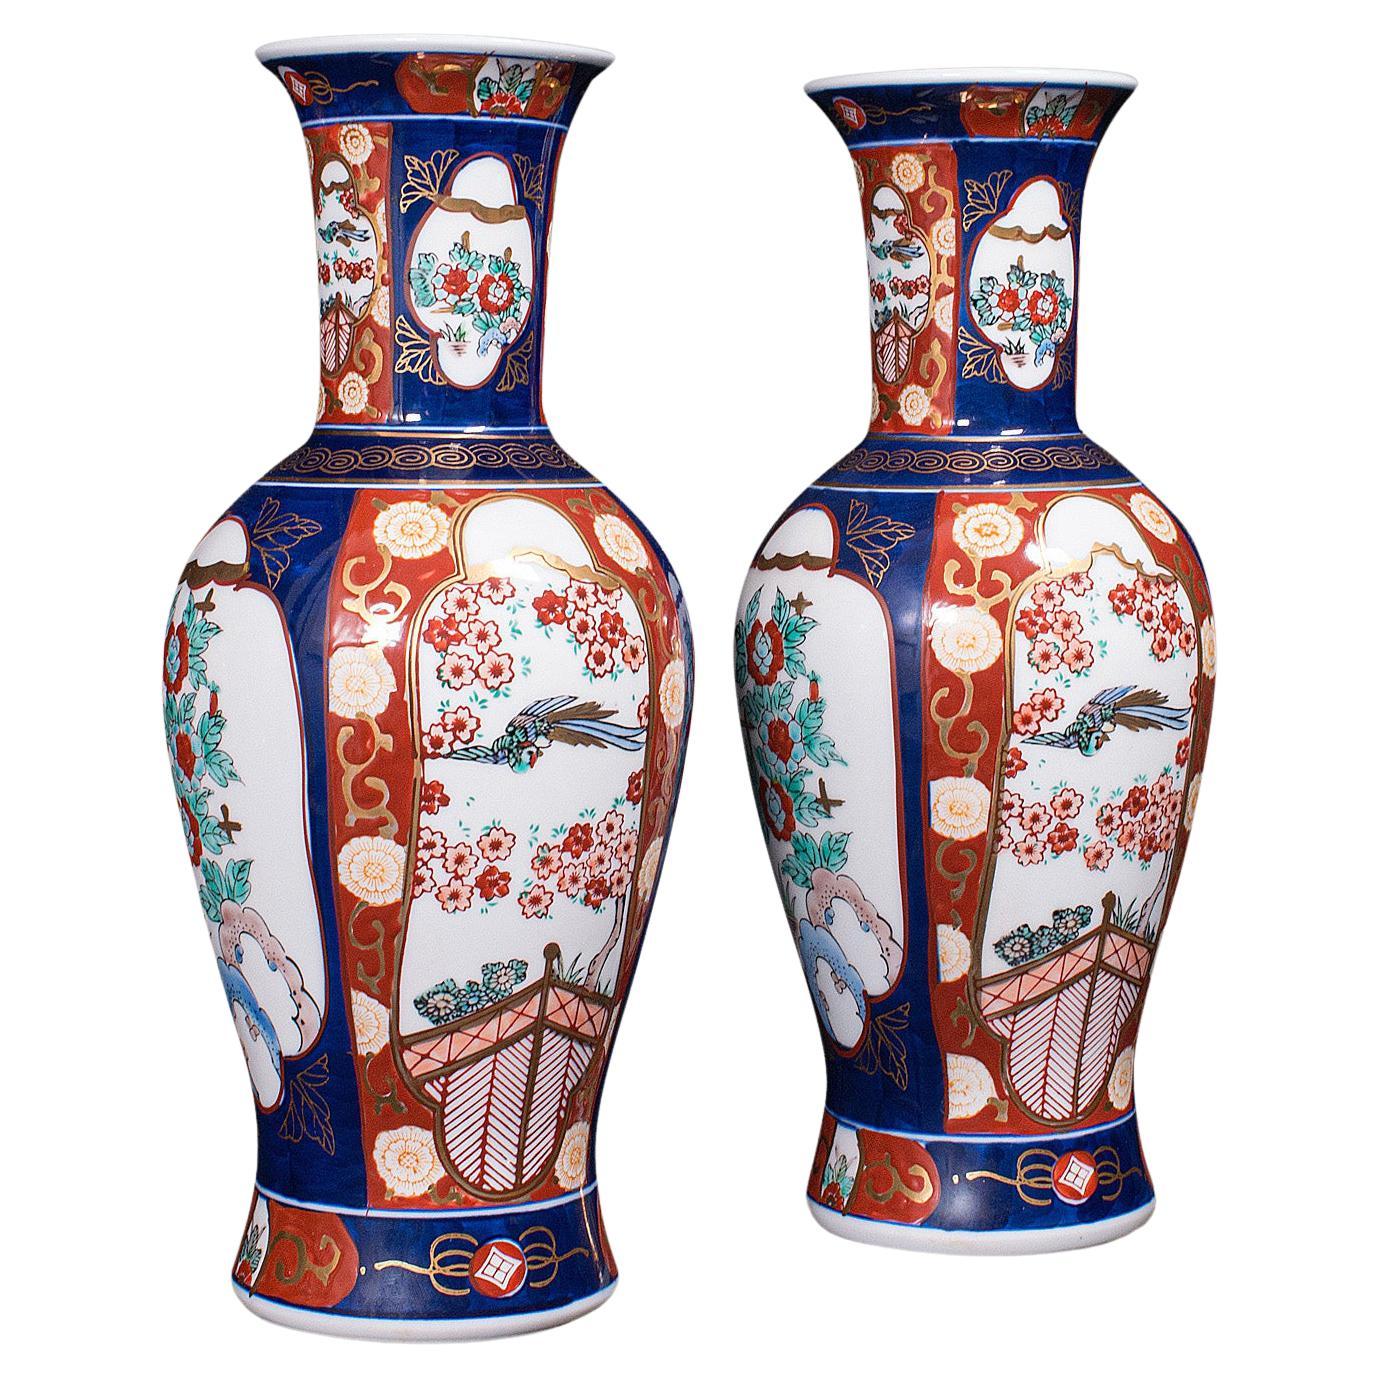 Pair of Vintage Flower Vases, Chinese, Display Urn, Imari Revival, Late 20th.C